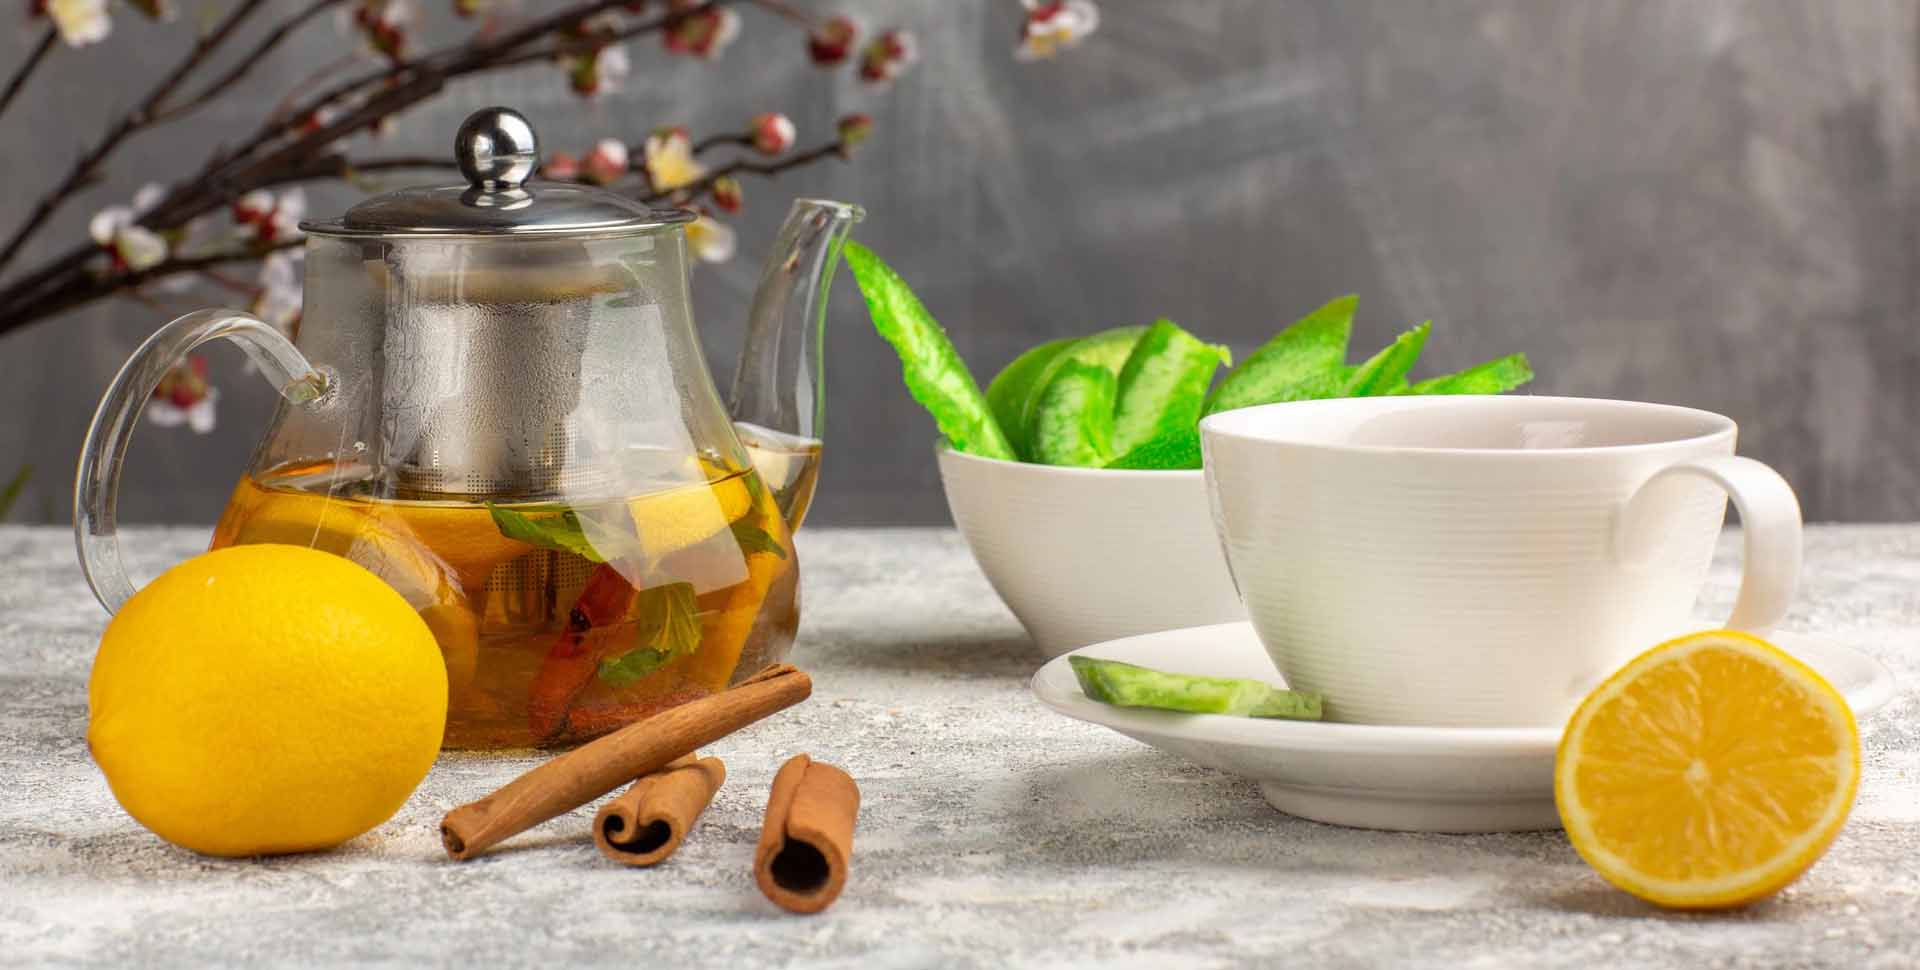 Orientálne doplnky - konvica s čajom, čajové šálky, škorica a citrón na štylizovanom pozadí